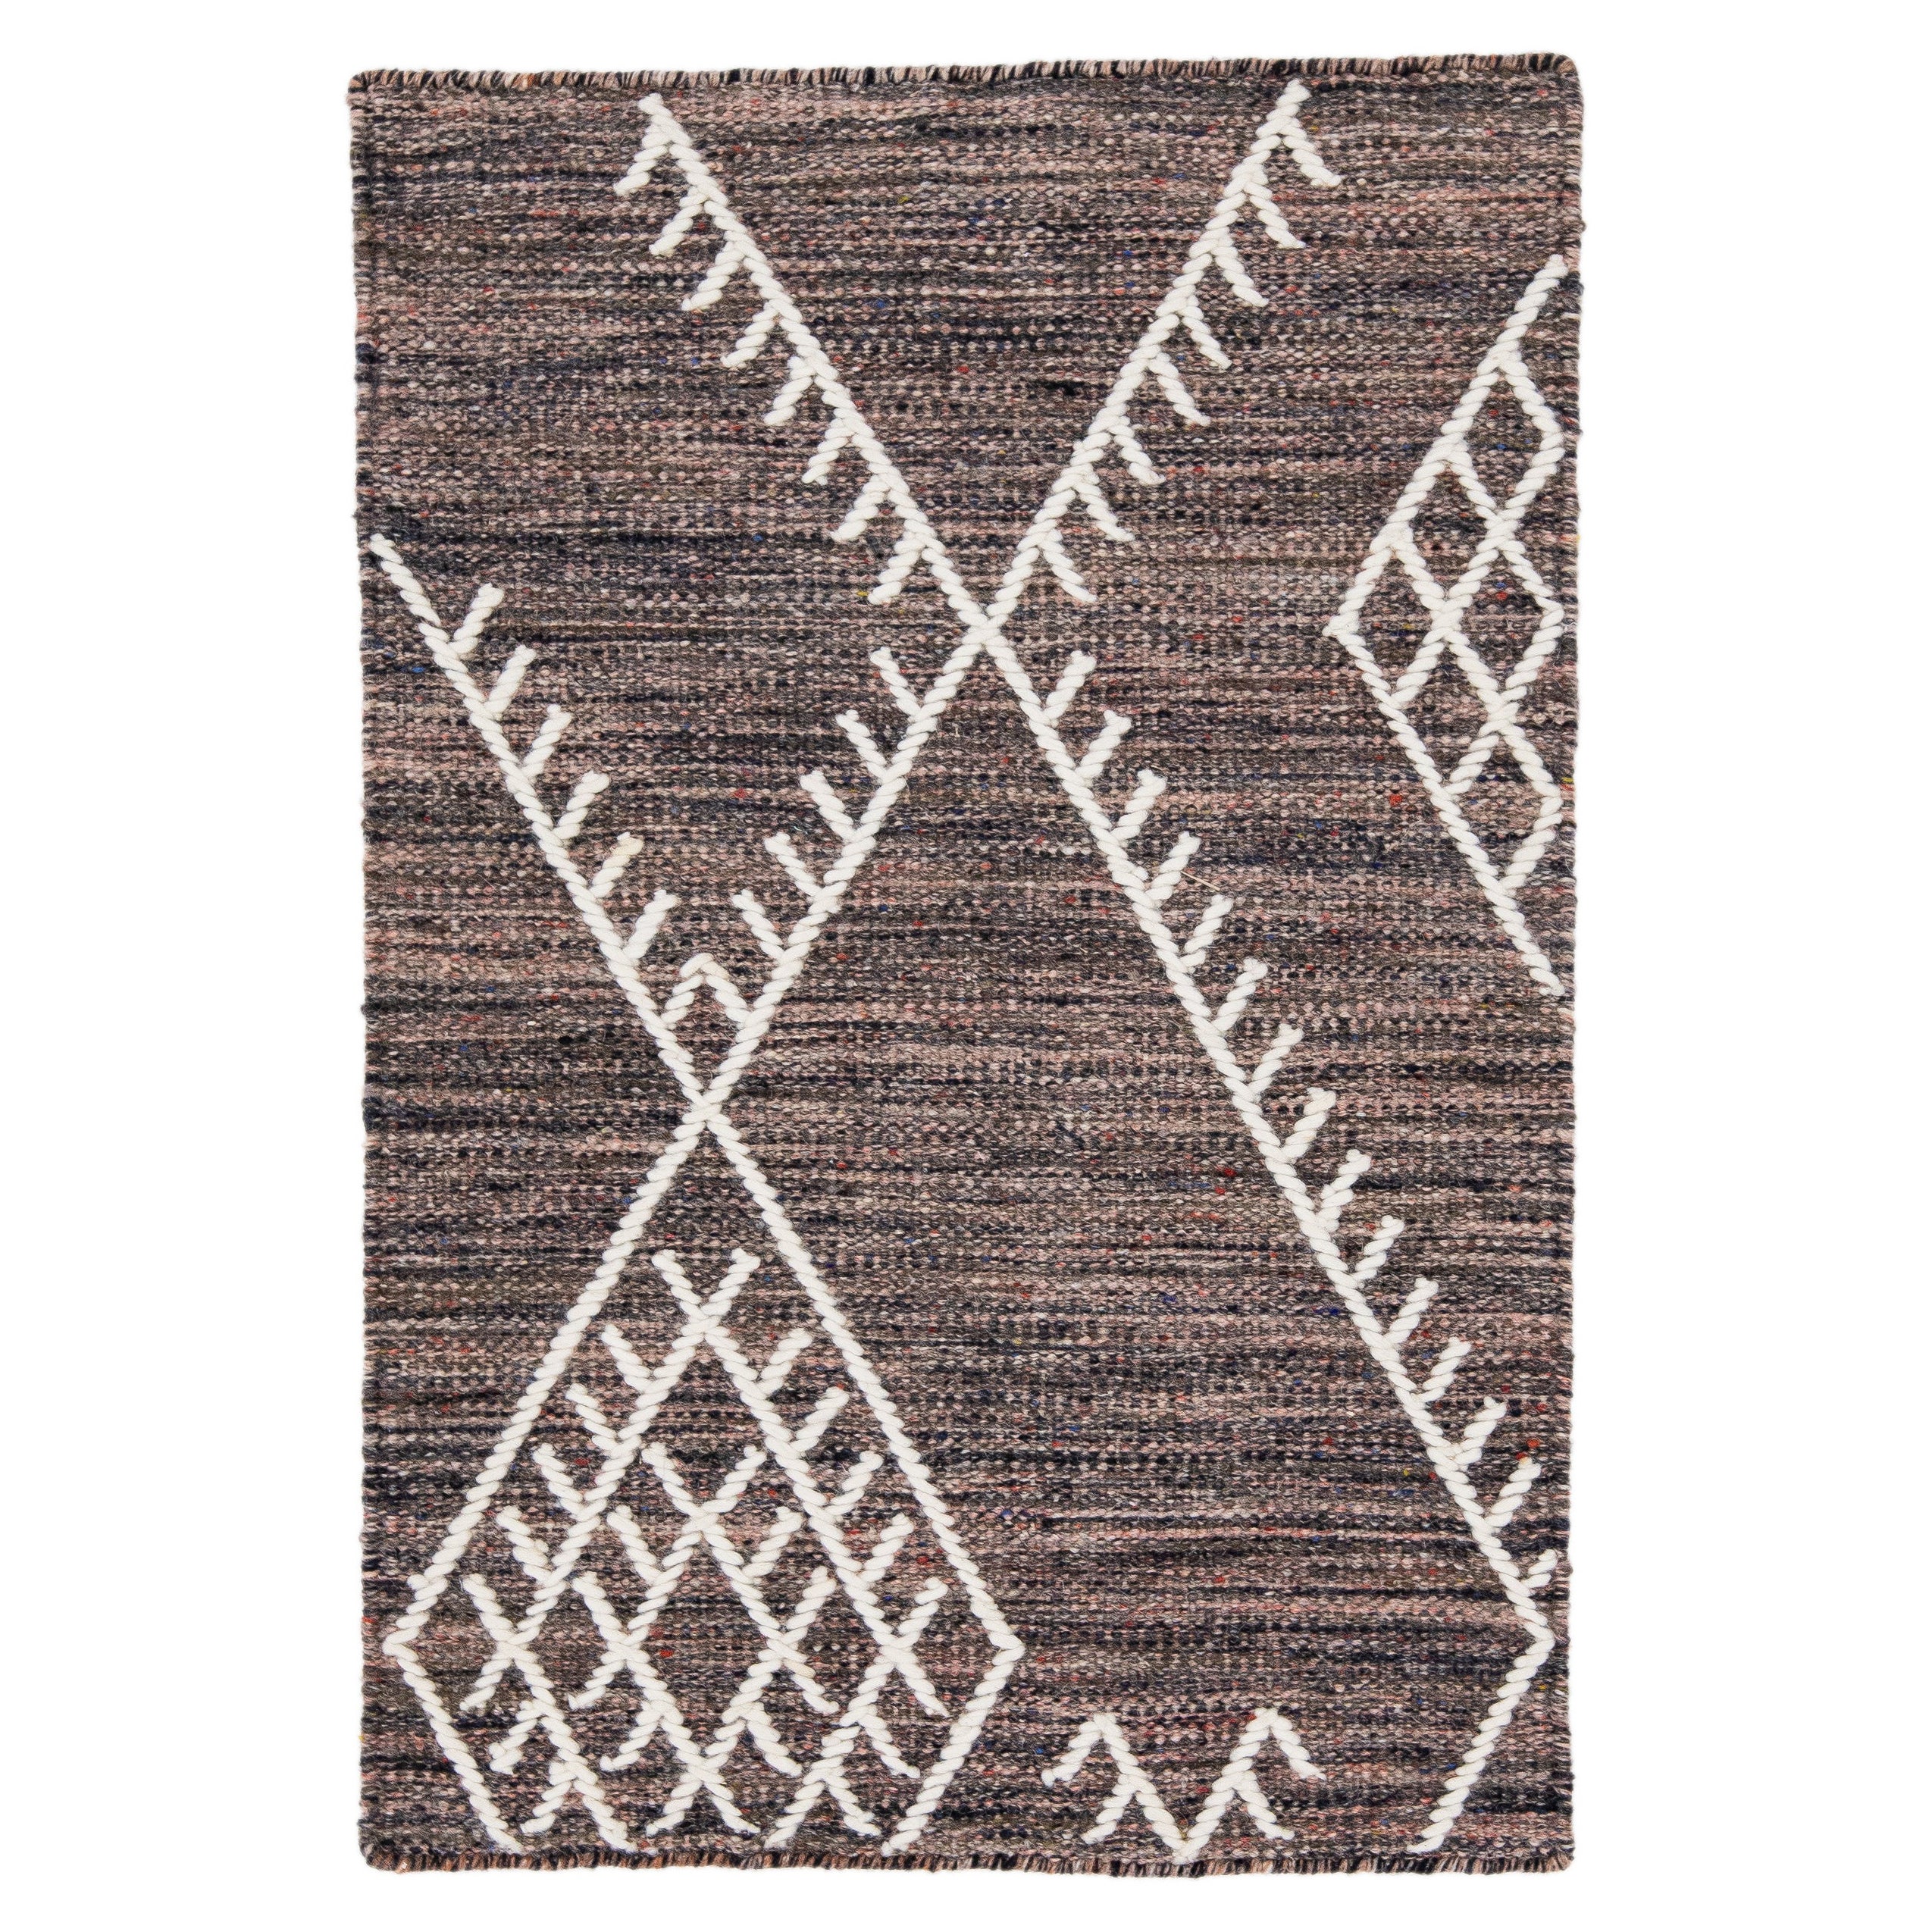  Apadana's Flachgewebter Kelim-Teppich aus mehreren Wollen